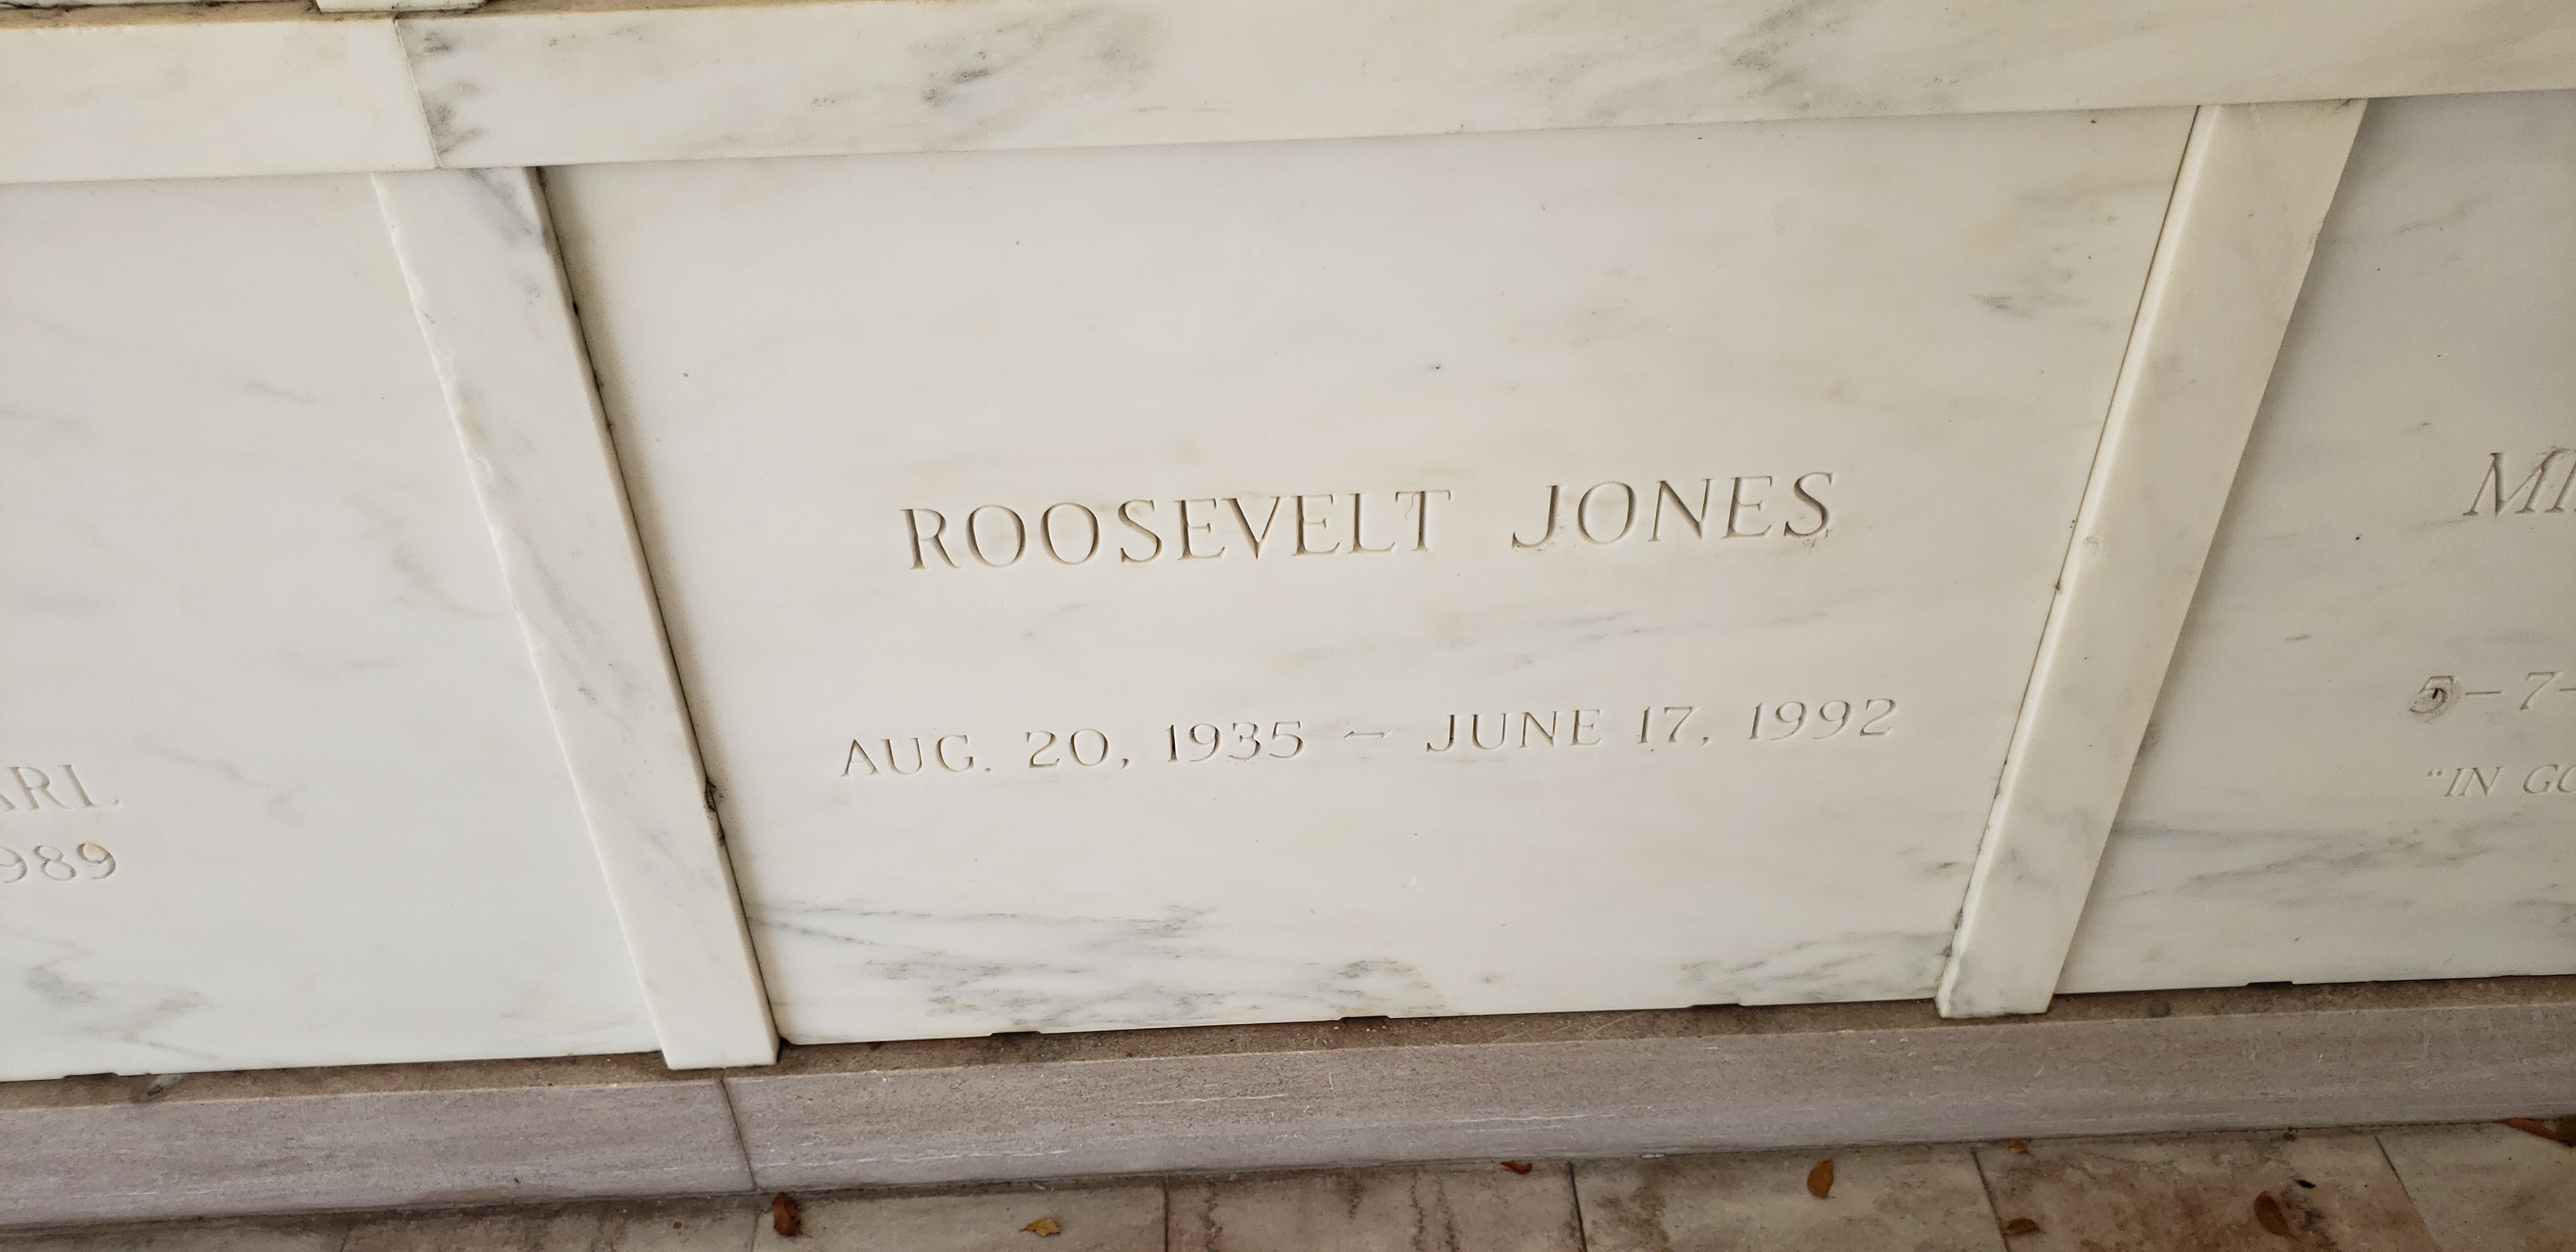 Roosevelt Jones